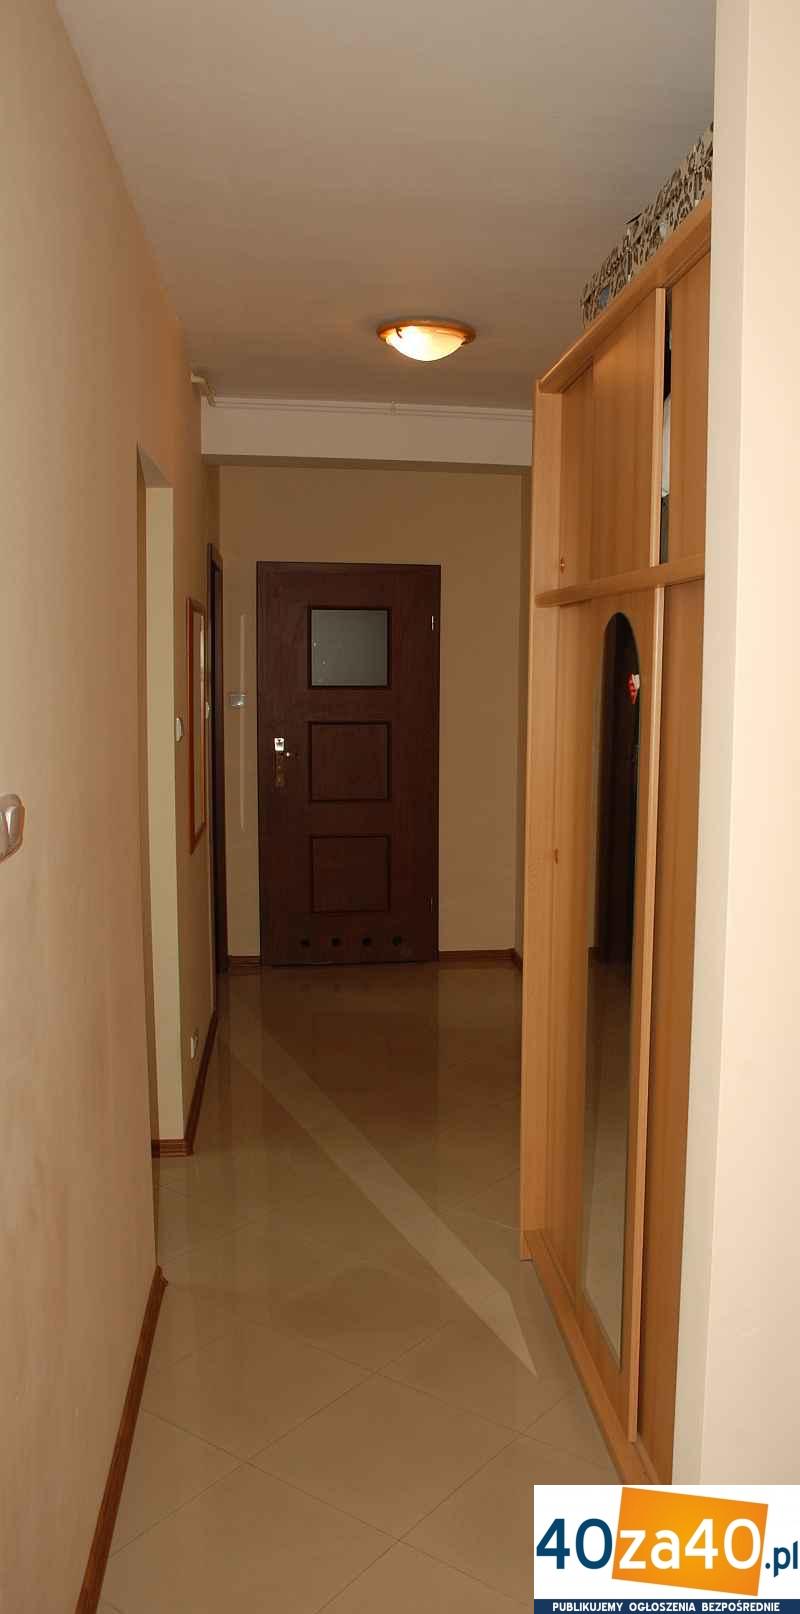 Mieszkanie do wynajęcia, pokoje: 2, cena: 1 600,00 PLN, Legionowo, kontakt: 605-533-089